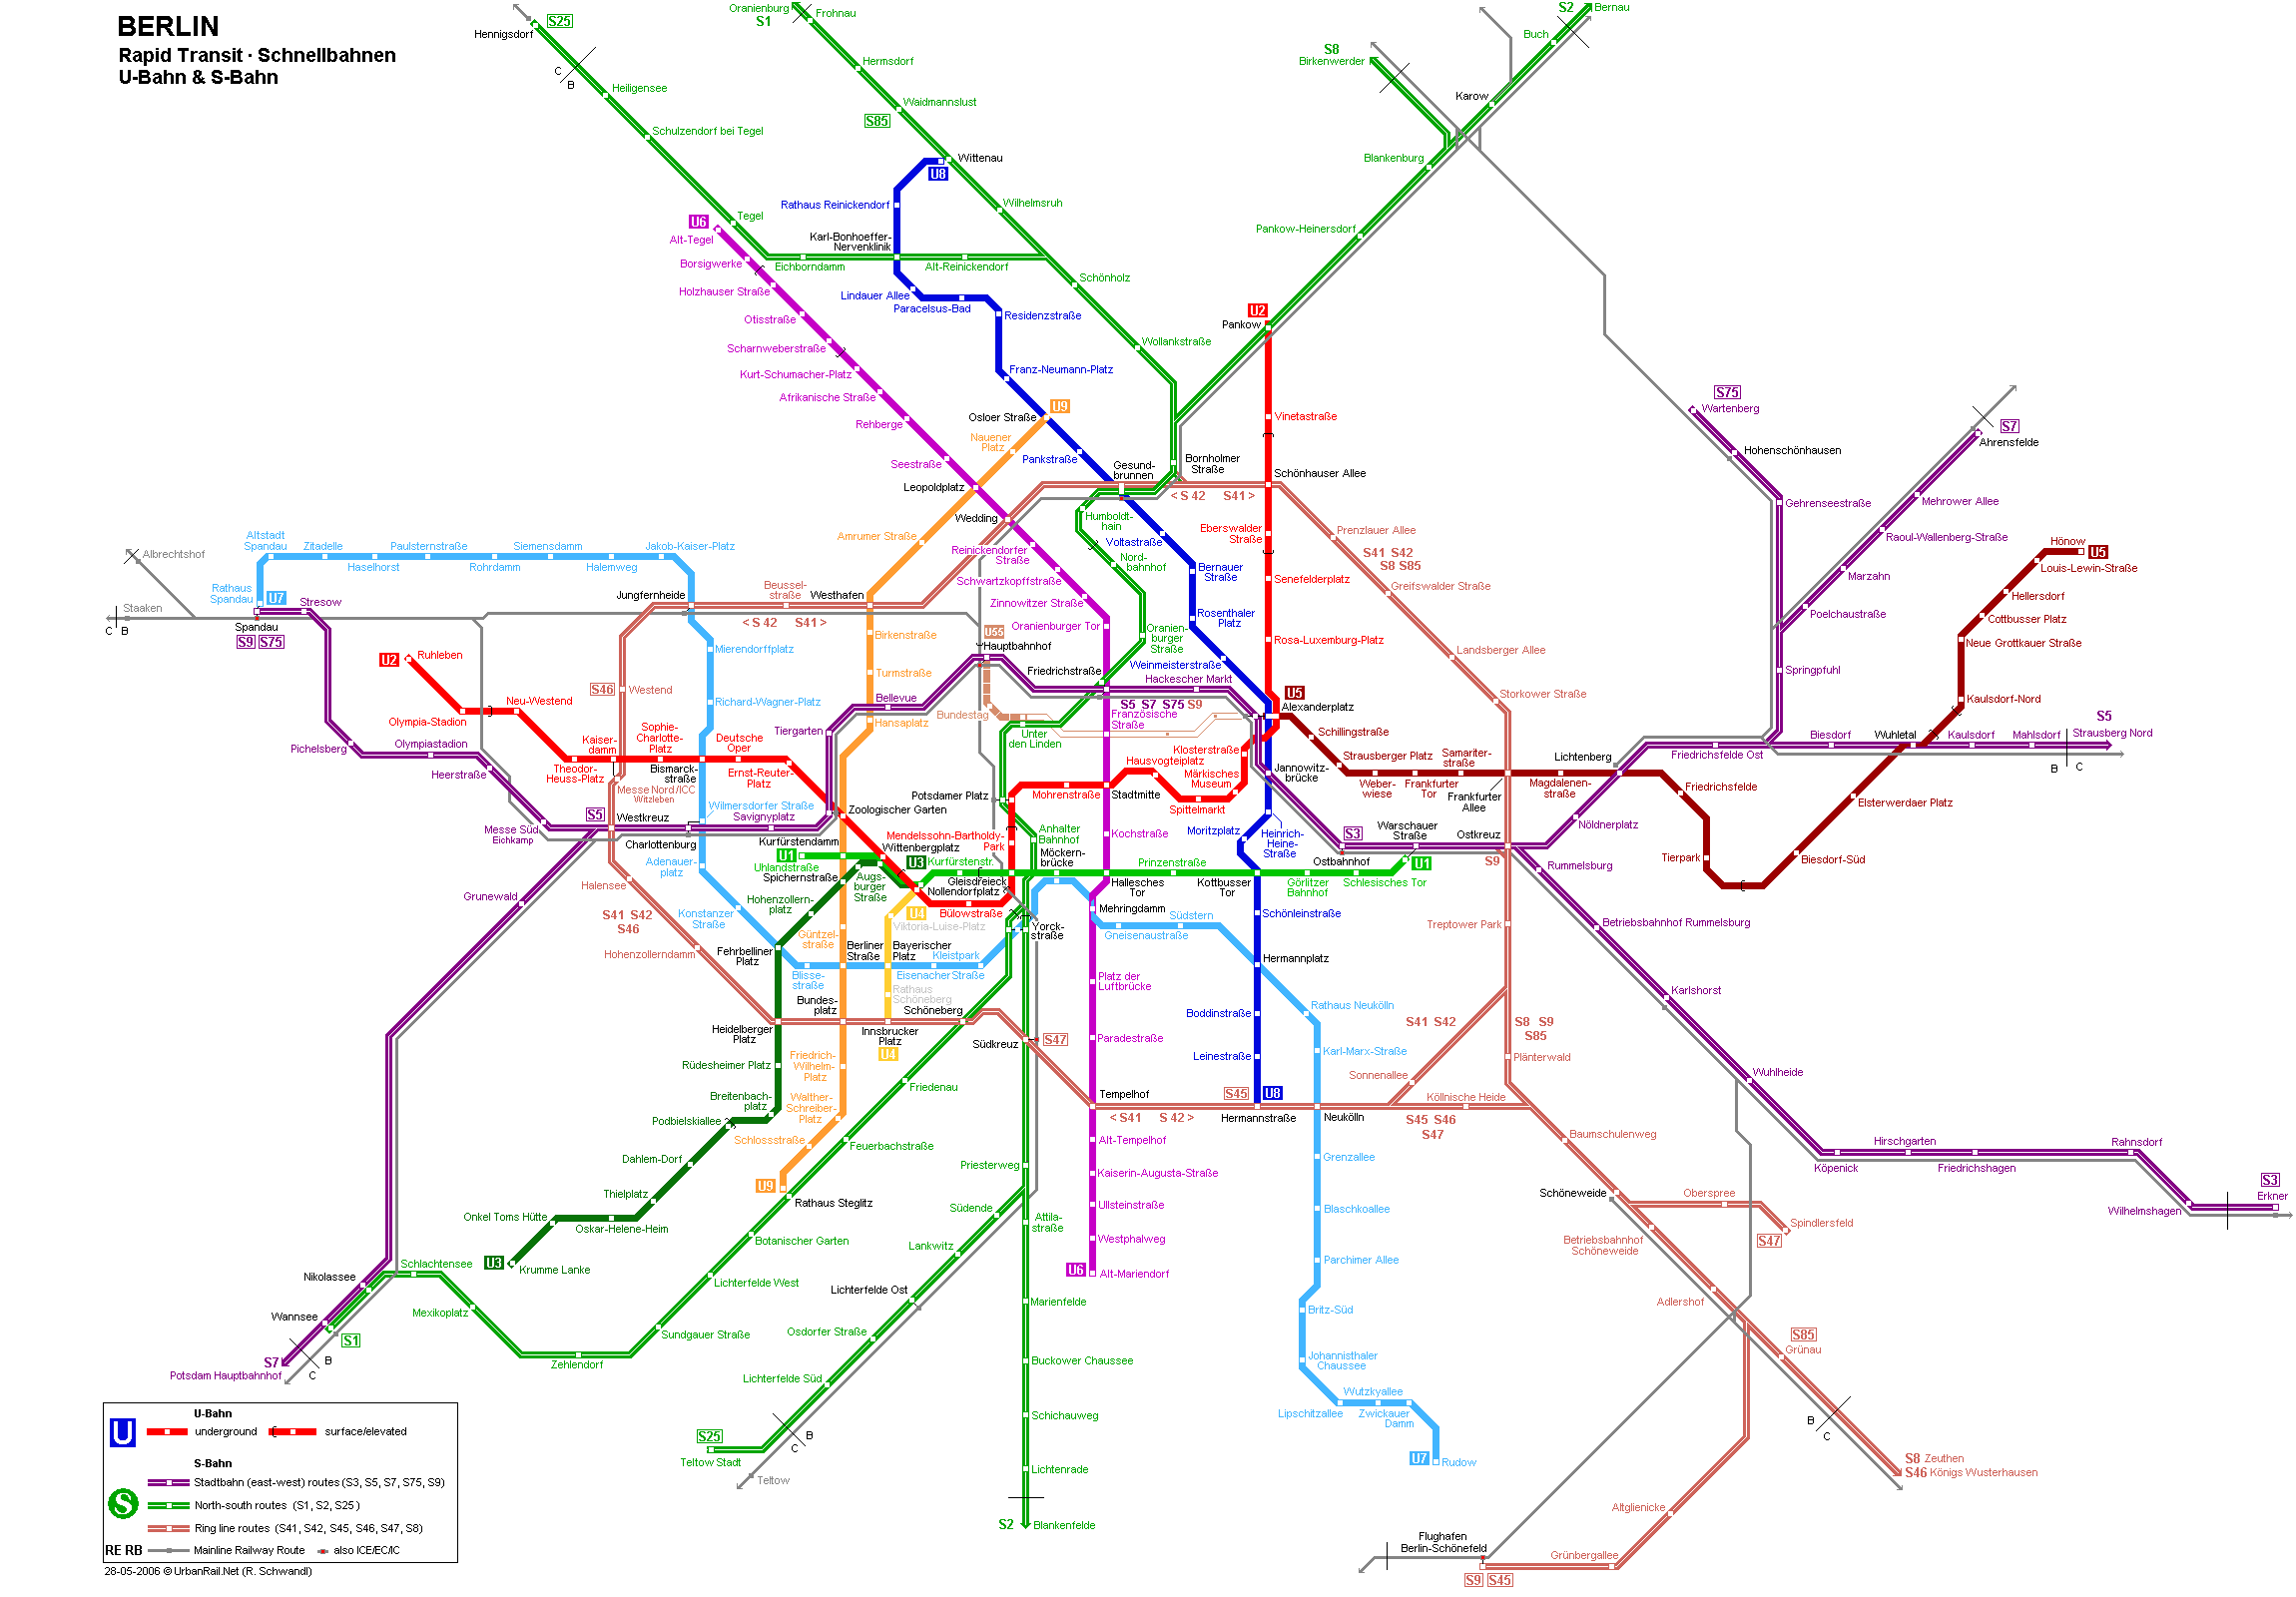 budapest metróvonalak térkép Berlin térkép, Berlin látnivalóinak és nevezetességeinek térképe  budapest metróvonalak térkép